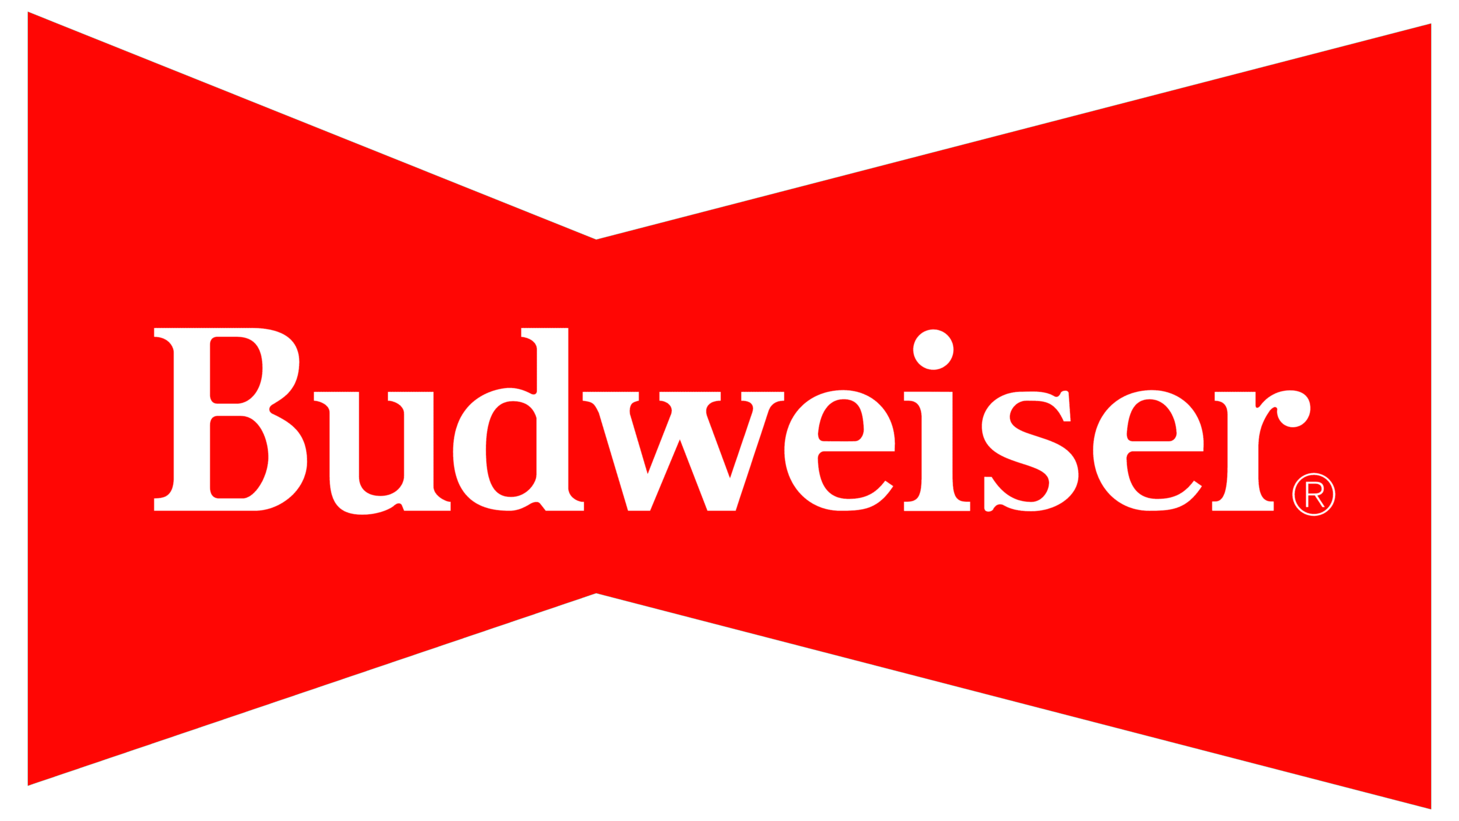 Budweiser sign 1968 1987